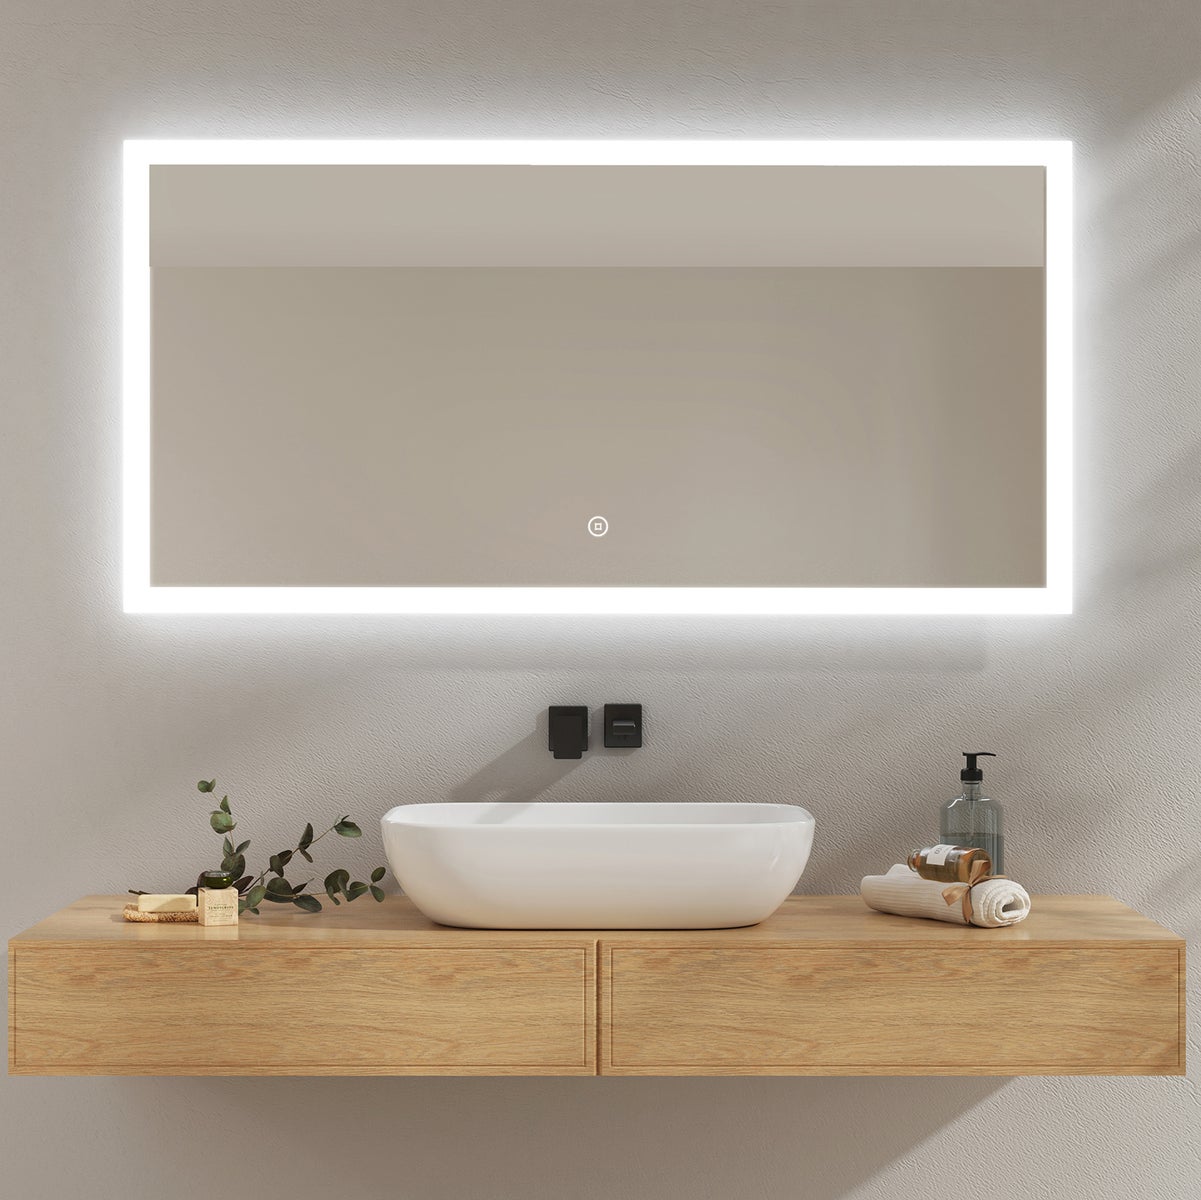 EMKE Badspiegel mit Beleuchtung, 120x60cm, Kaltweißes Licht